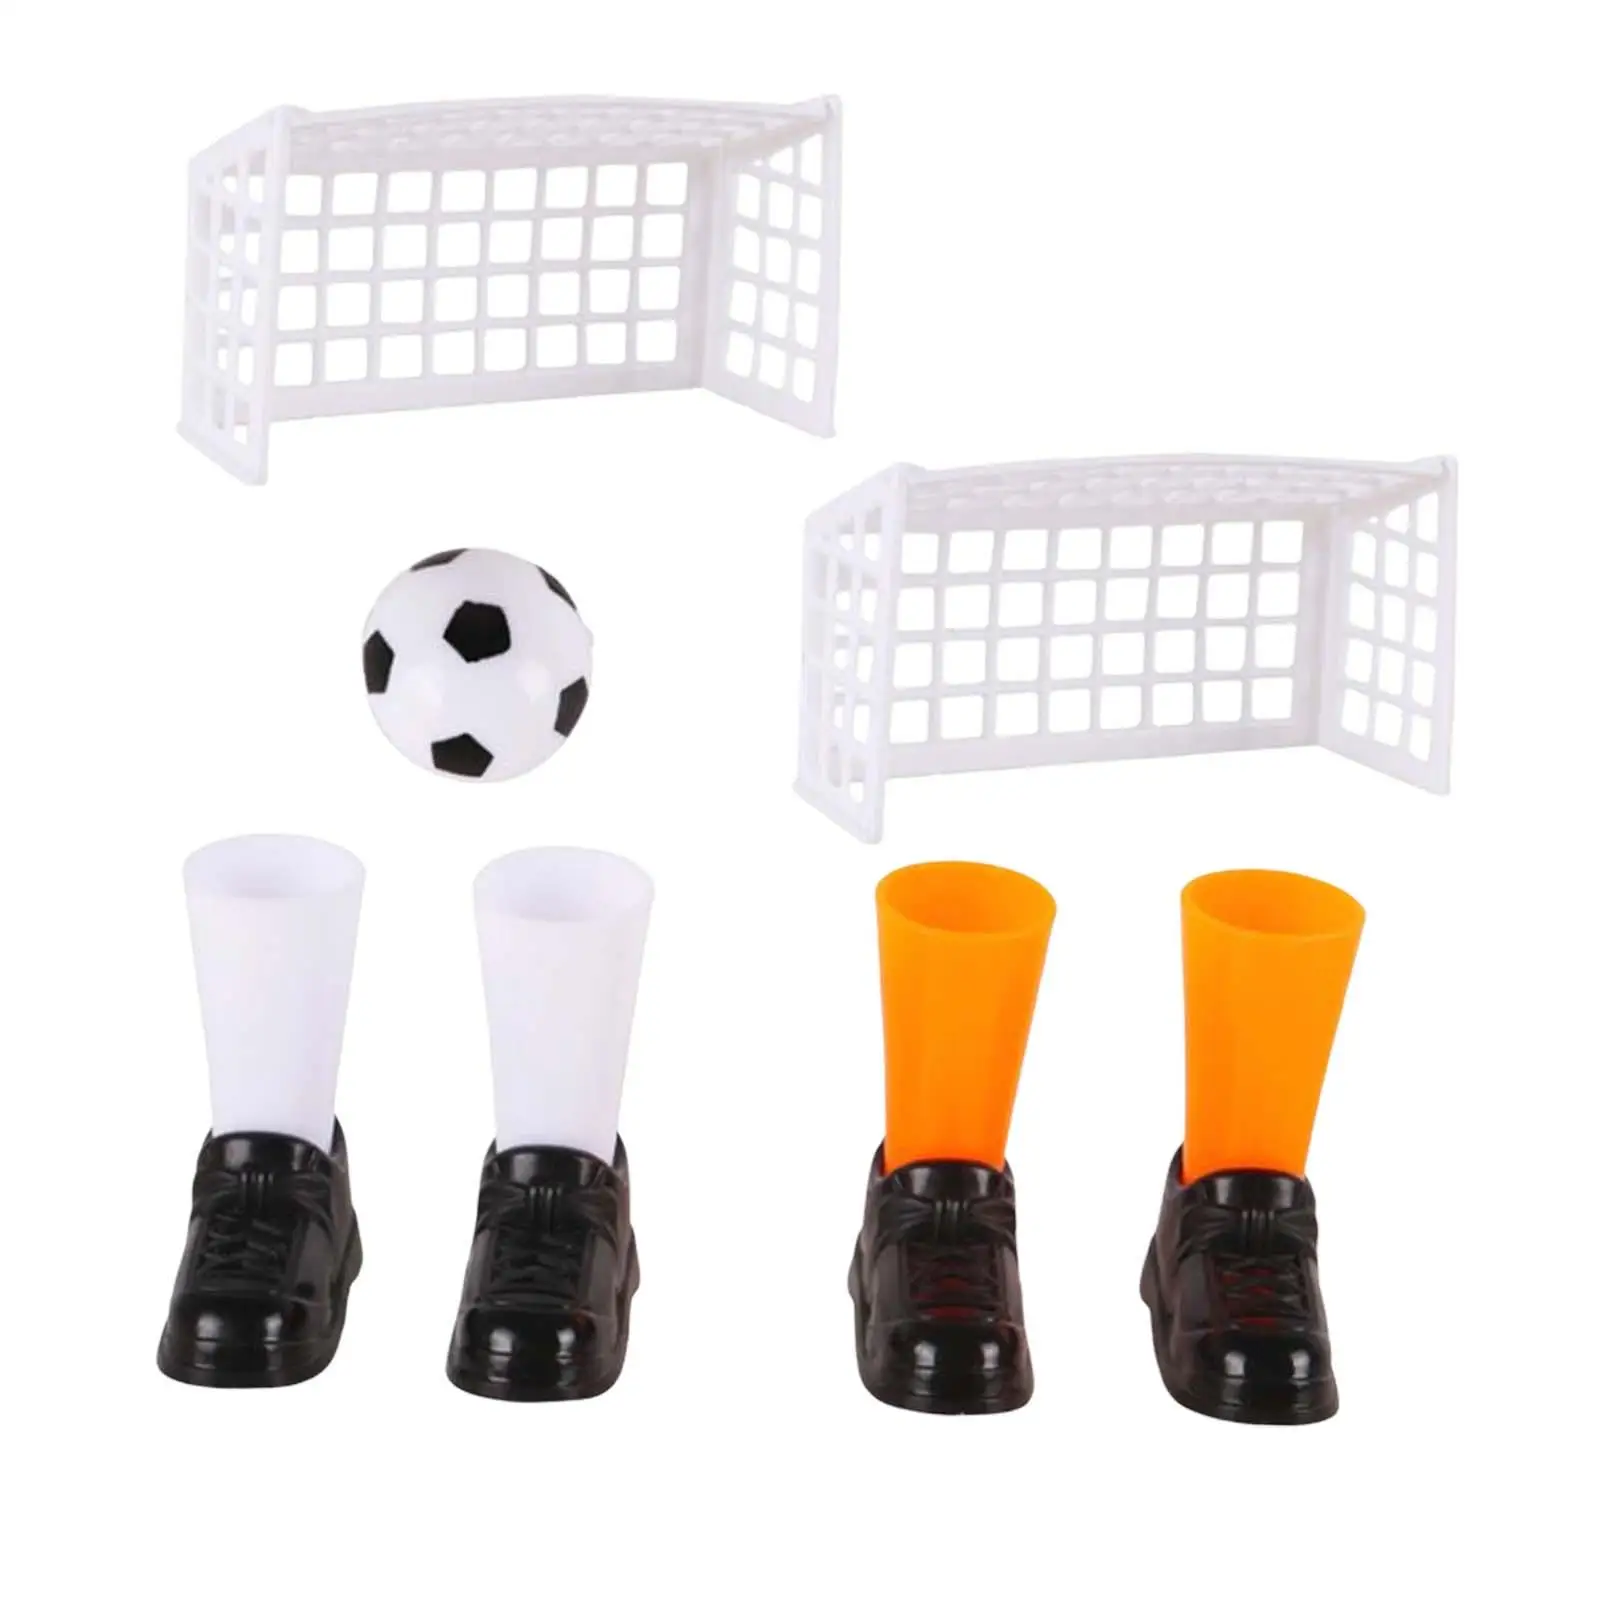 

Набор для настольного футбола, футбольная игра, Интерактивная игрушка, спортивный настольный мини-футбол